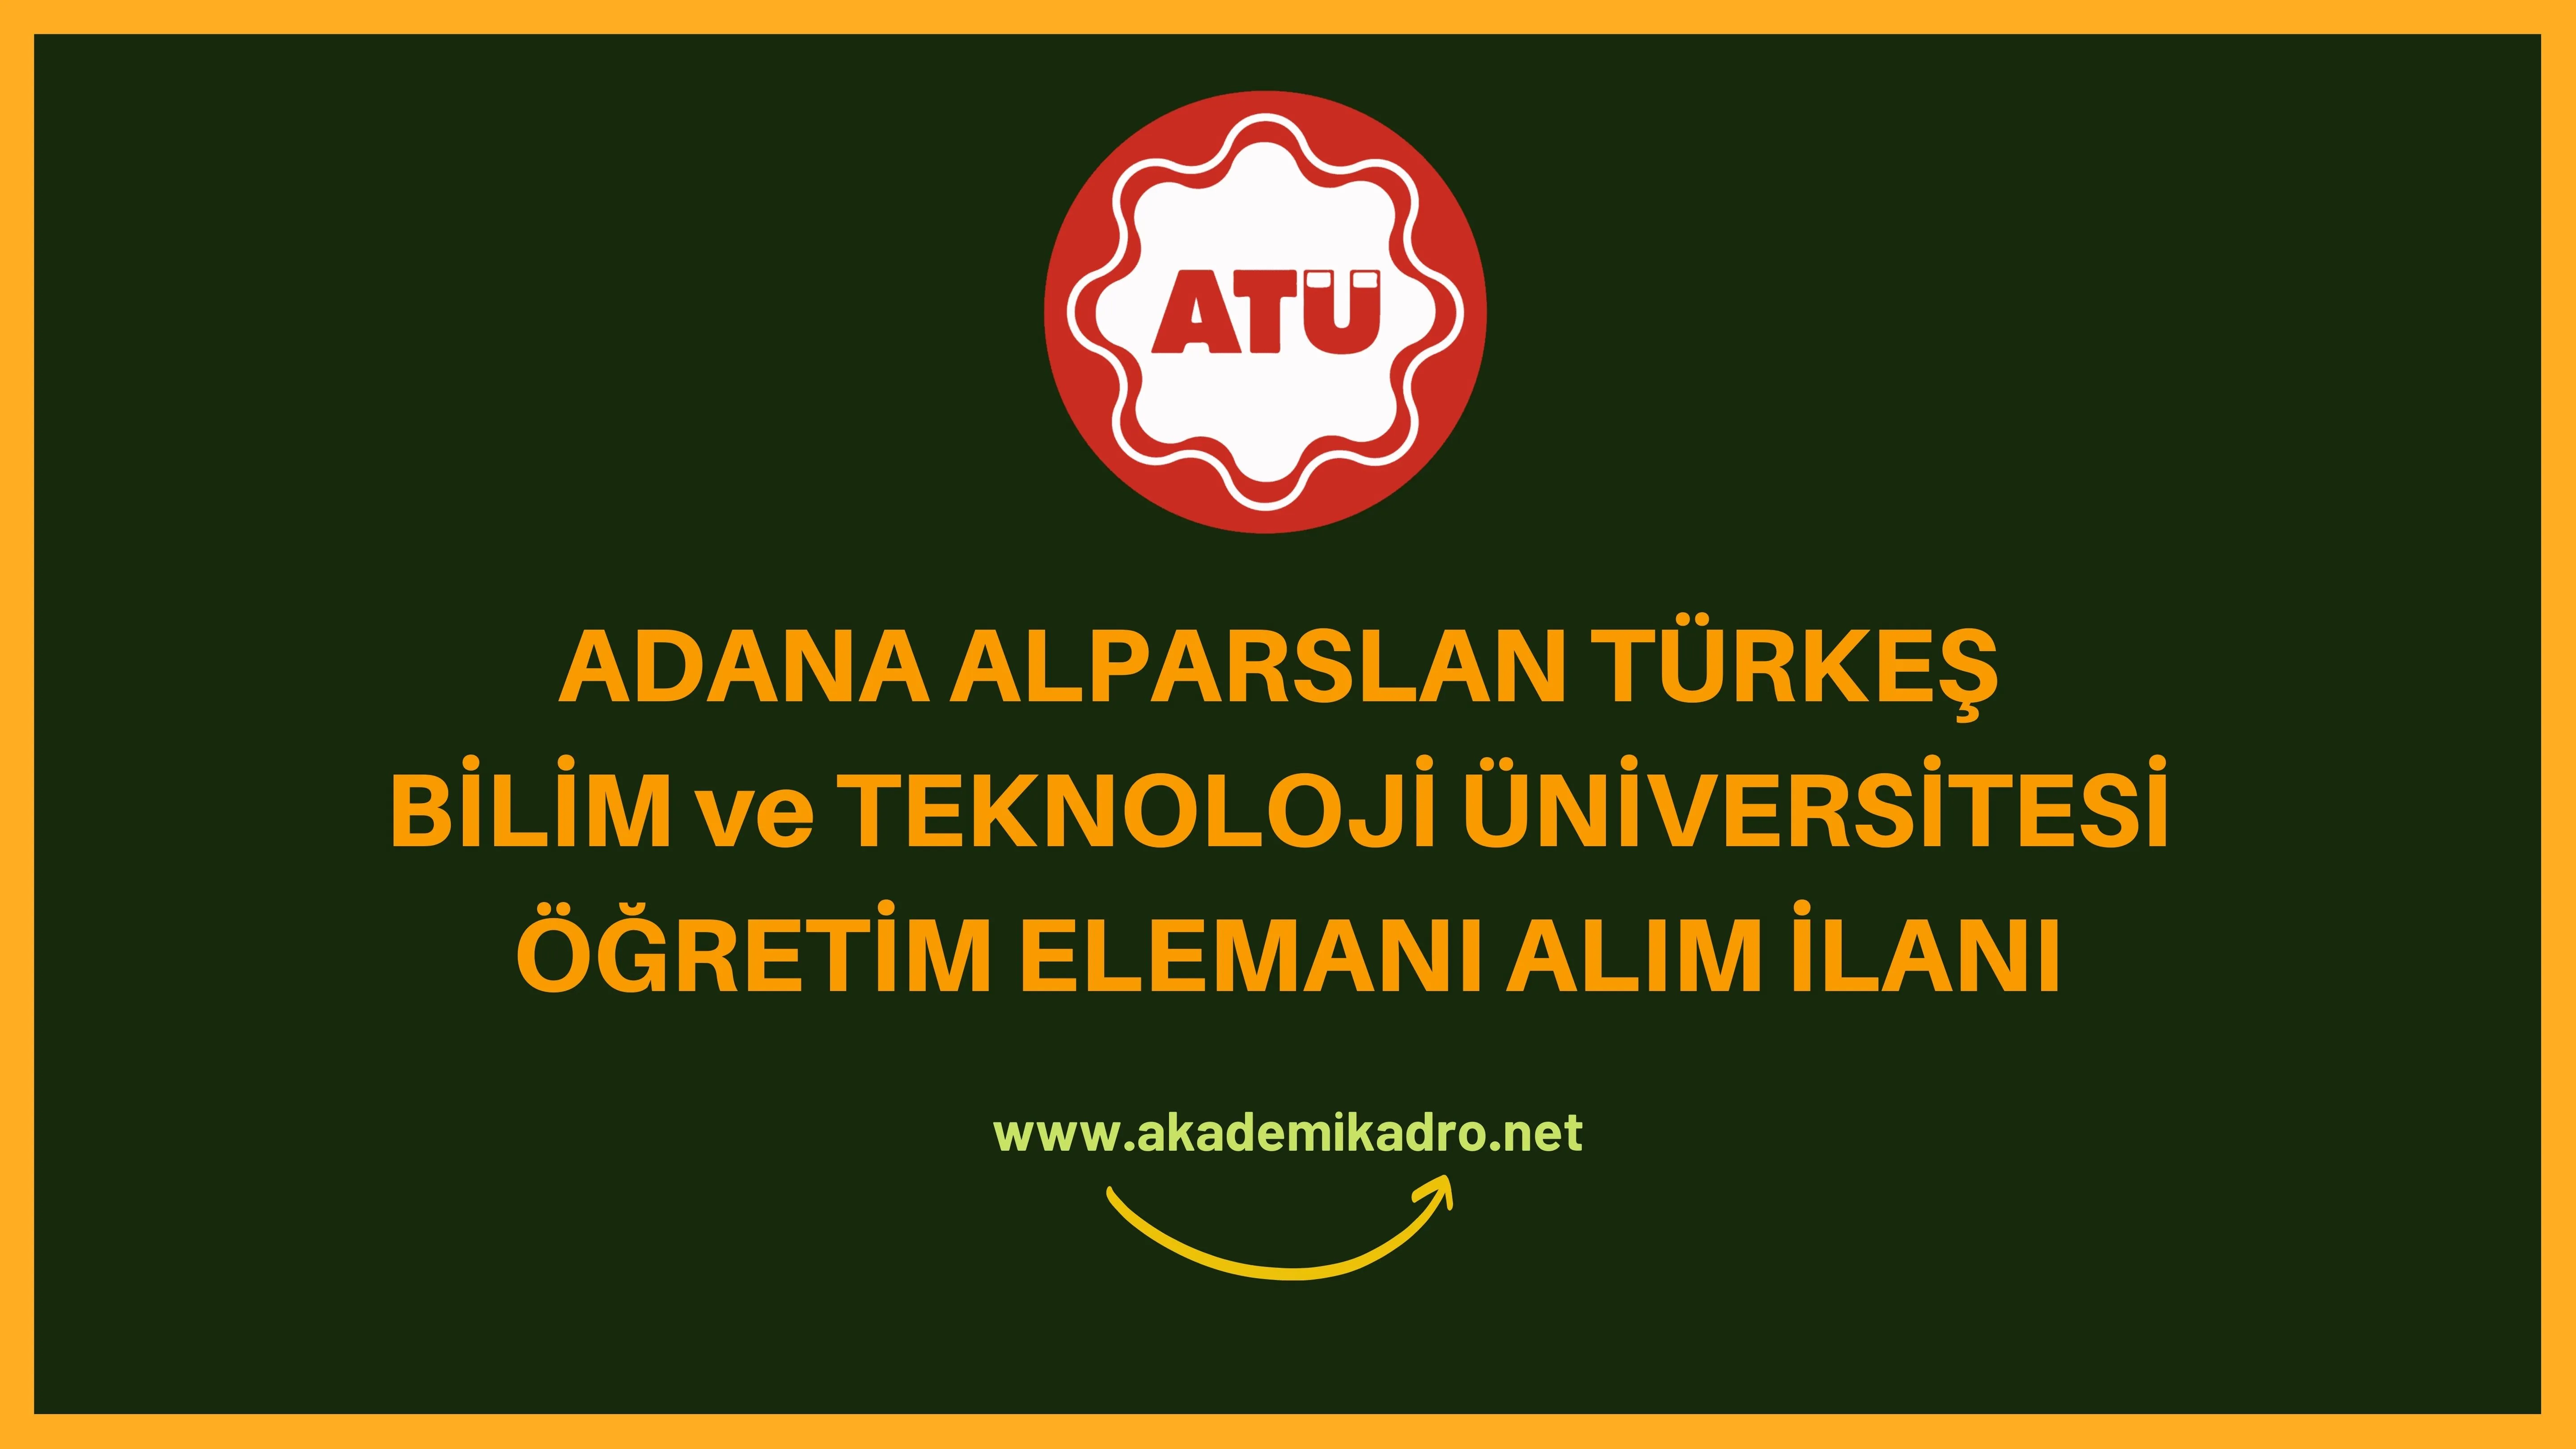 Adana Alparslan Türkeş Bilim ve Teknoloji Üniversitesi Araştırma görevlisi, öğretim görevlisi ve öğretim üyesi olmak üzere 20 Öğretim elemanı alacak.